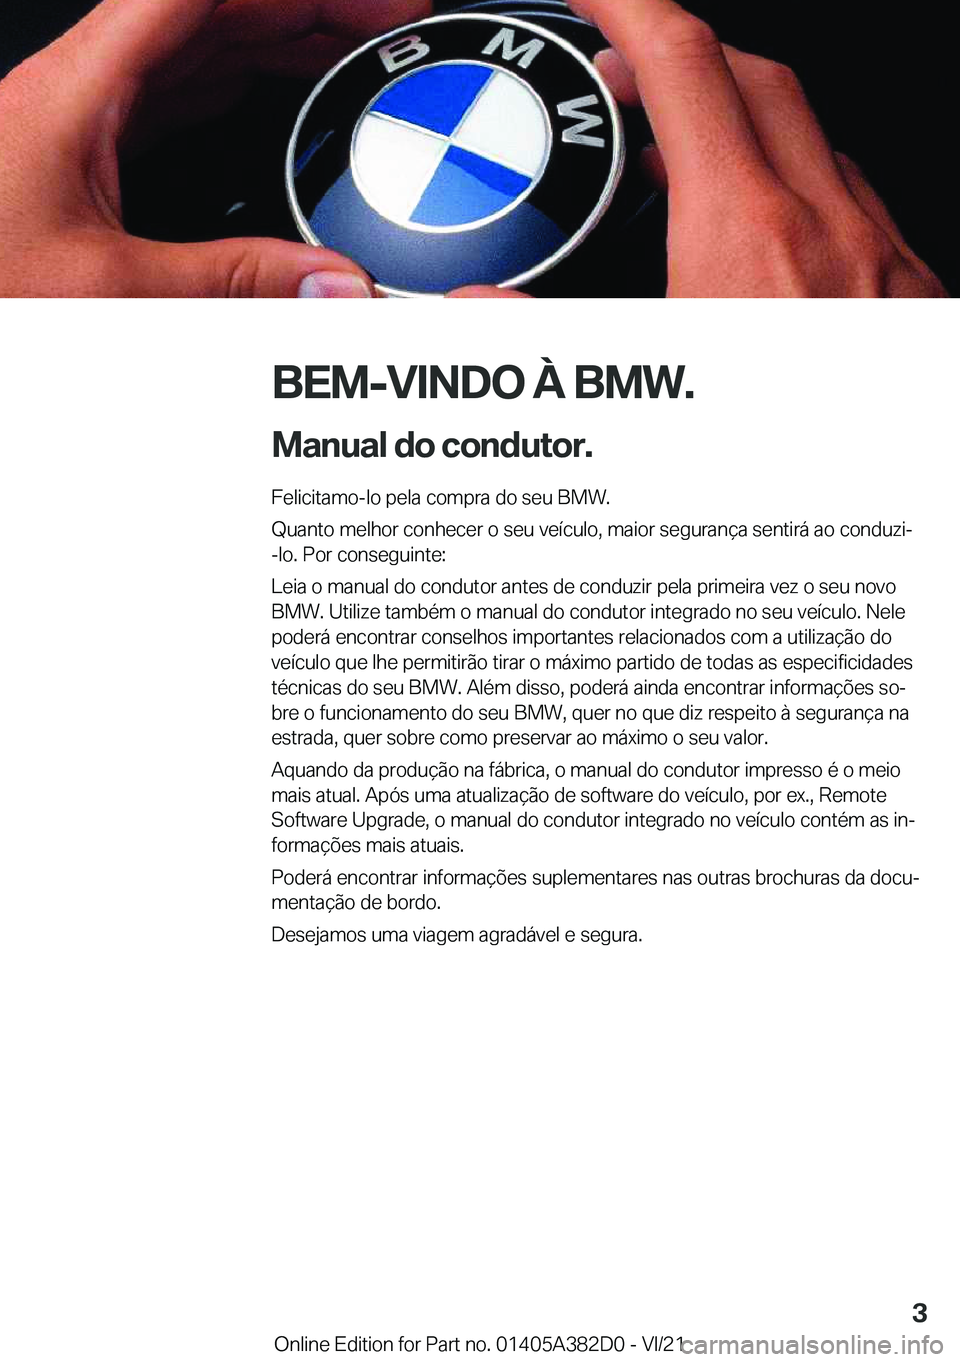 BMW Z4 2022  Manual do condutor (in Portuguese) �B�E�M�-�V�I�N�D�O��À��B�M�W�.
�M�a�n�u�a�l��d�o��c�o�n�d�u�t�o�r�. �F�e�l�i�c�i�t�a�m�o�-�l�o��p�e�l�a��c�o�m�p�r�a��d�o��s�e�u��B�M�W�.
�Q�u�a�n�t�o��m�e�l�h�o�r��c�o�n�h�e�c�e�r��o��s